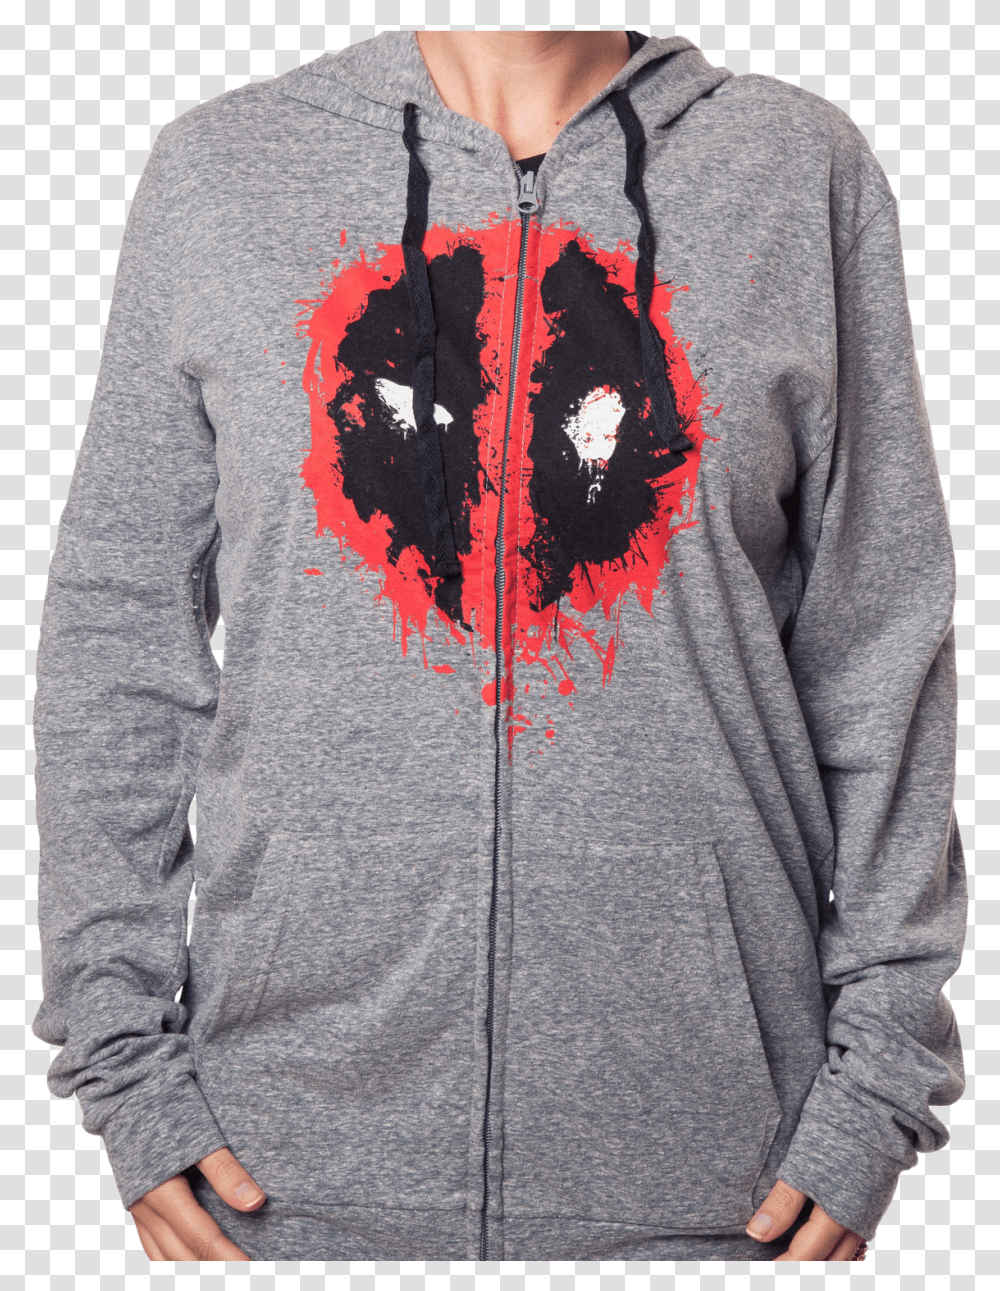 Deadpool Logo Zip Up Hoodie Hoodie, Clothing, Apparel, Sweater, Sweatshirt Transparent Png